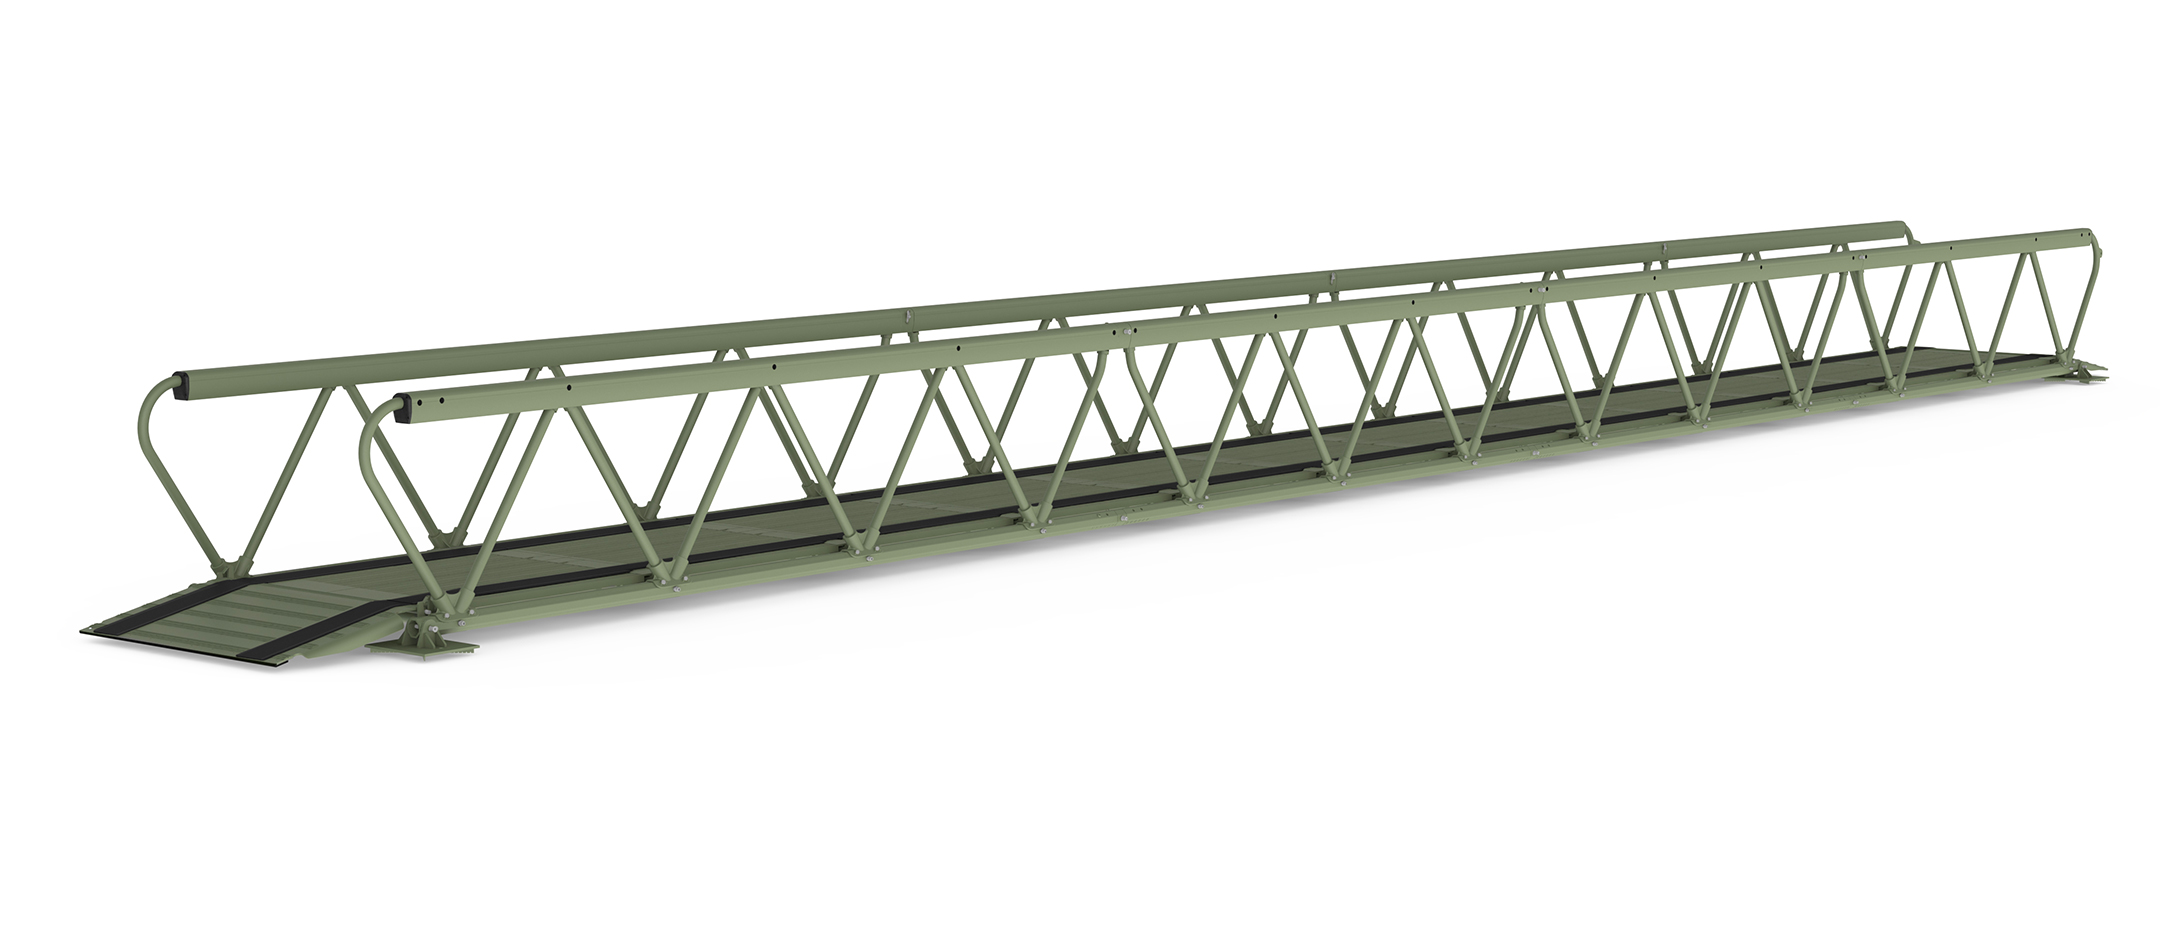 3D rendering of LVTB-1811 lightweight bridge